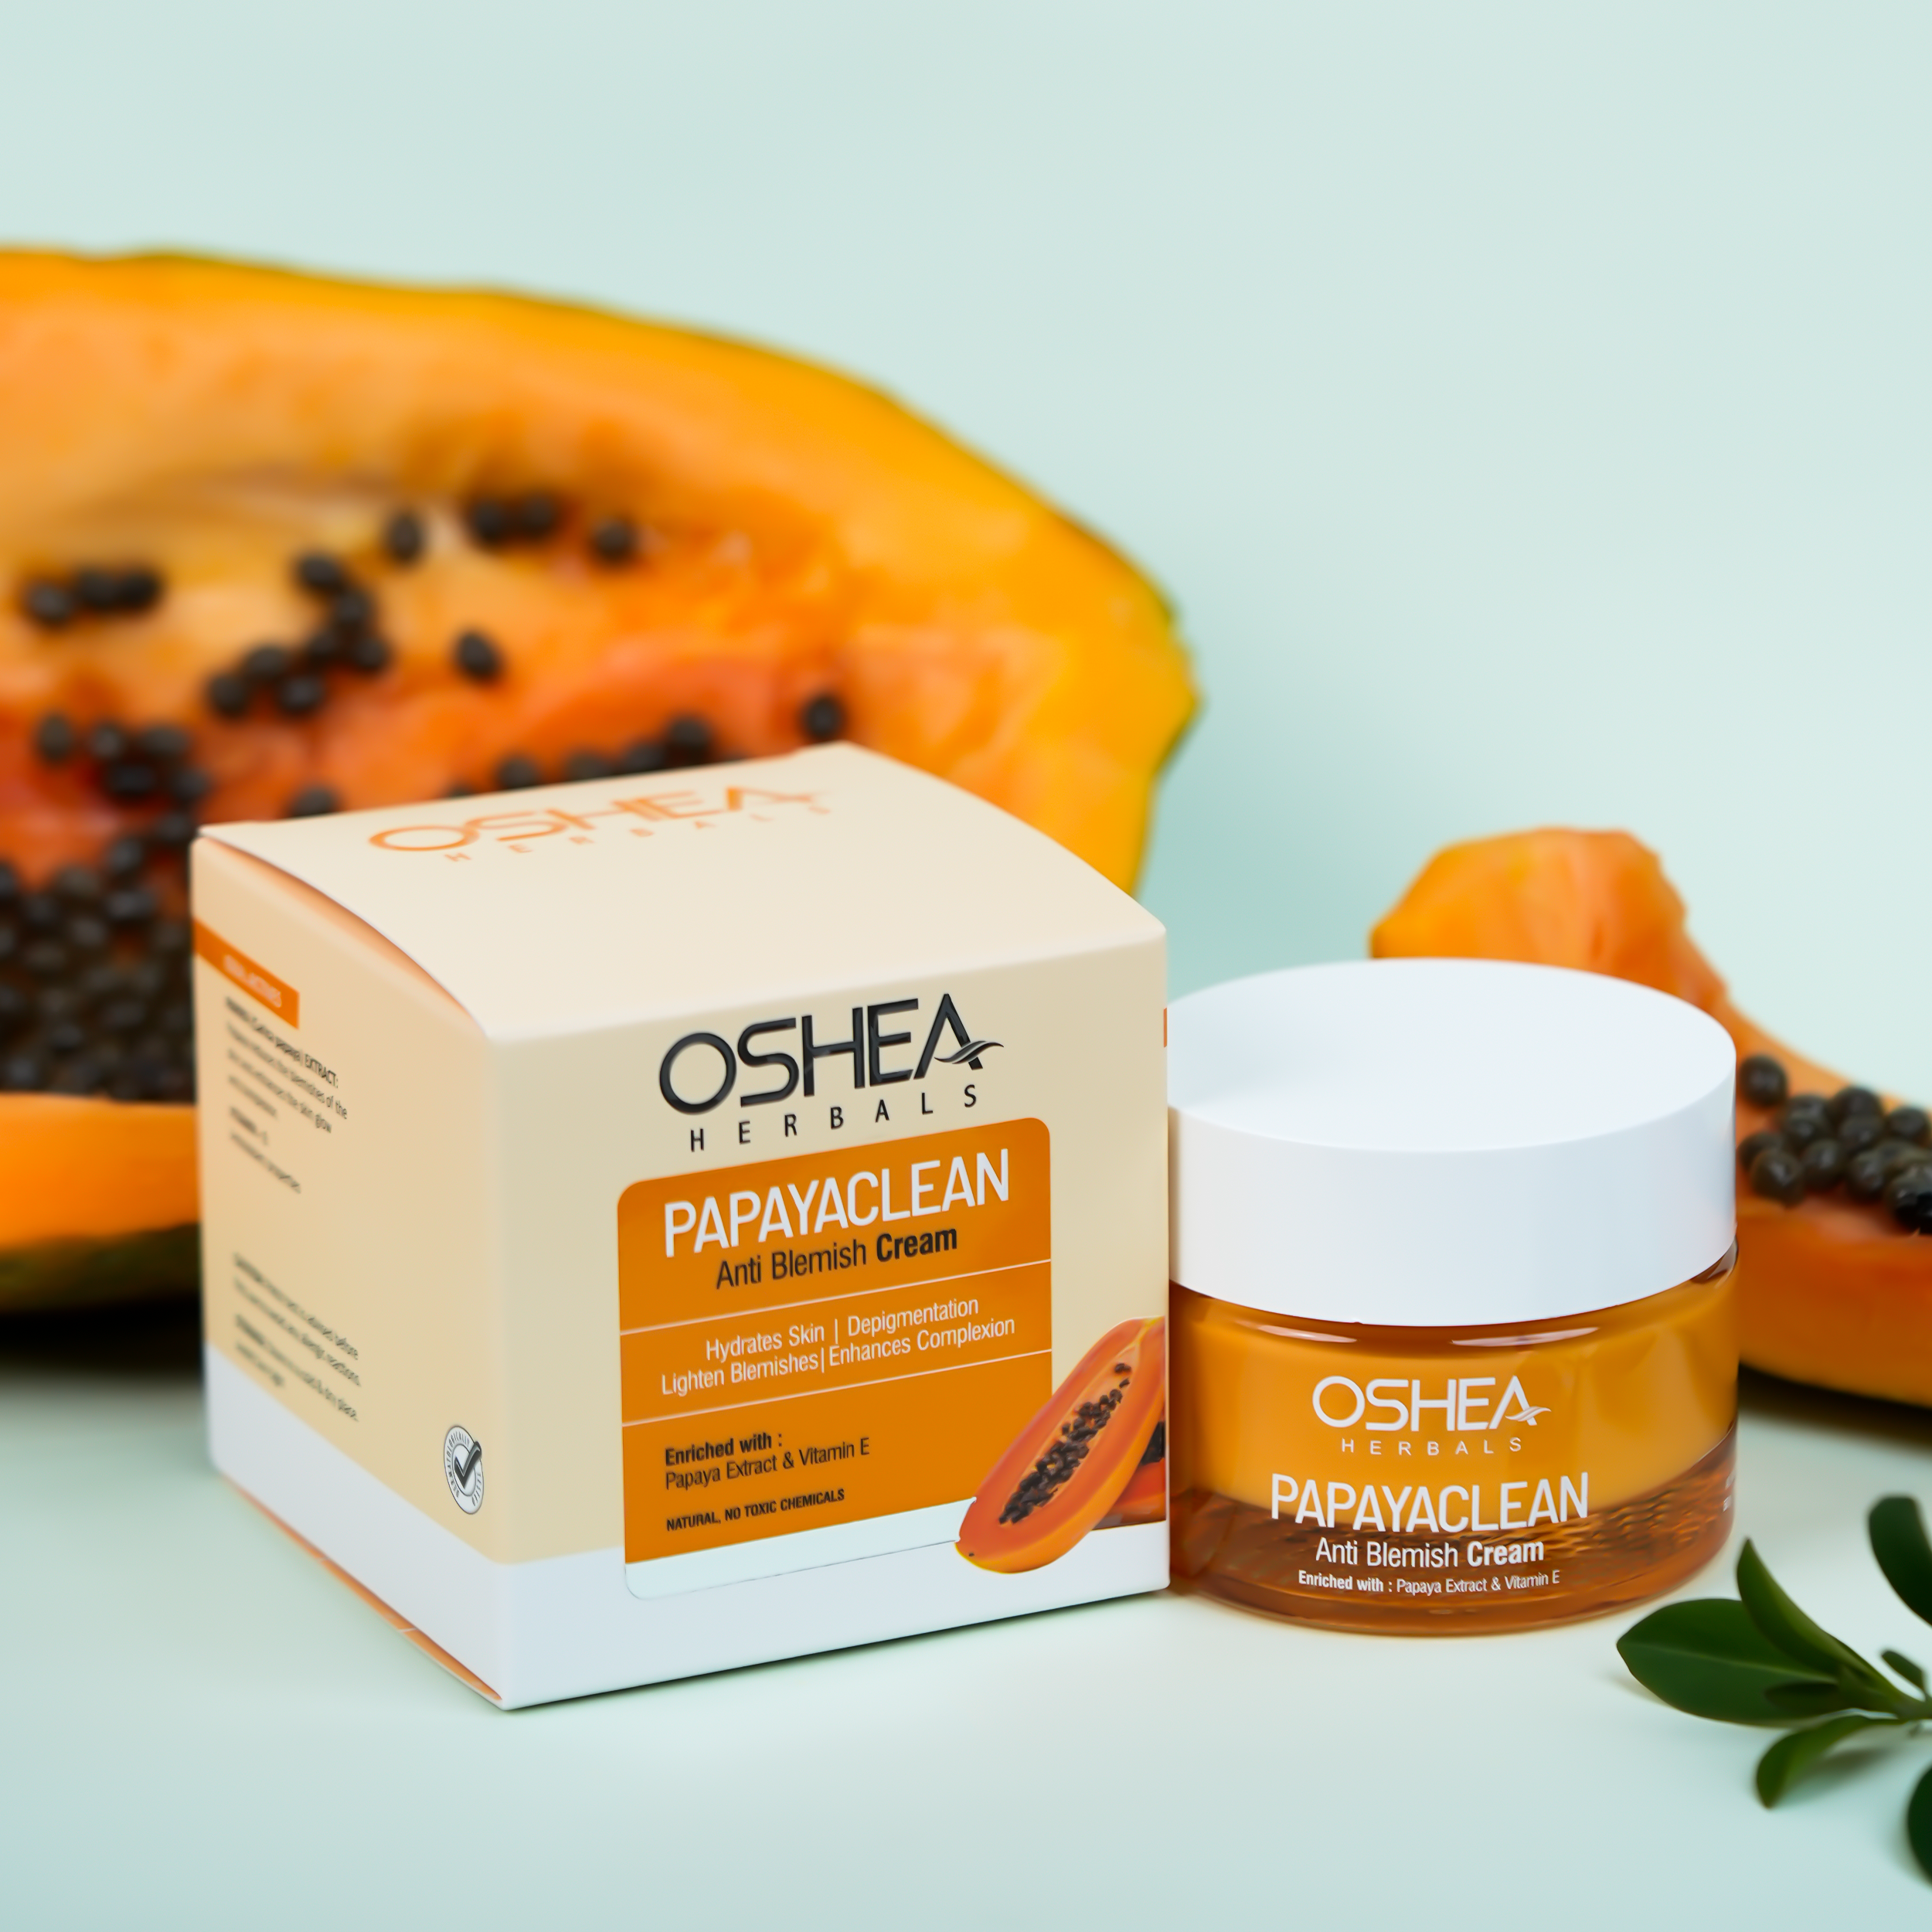 Papayaclean Anti Blemish Cream Oshea Herbals